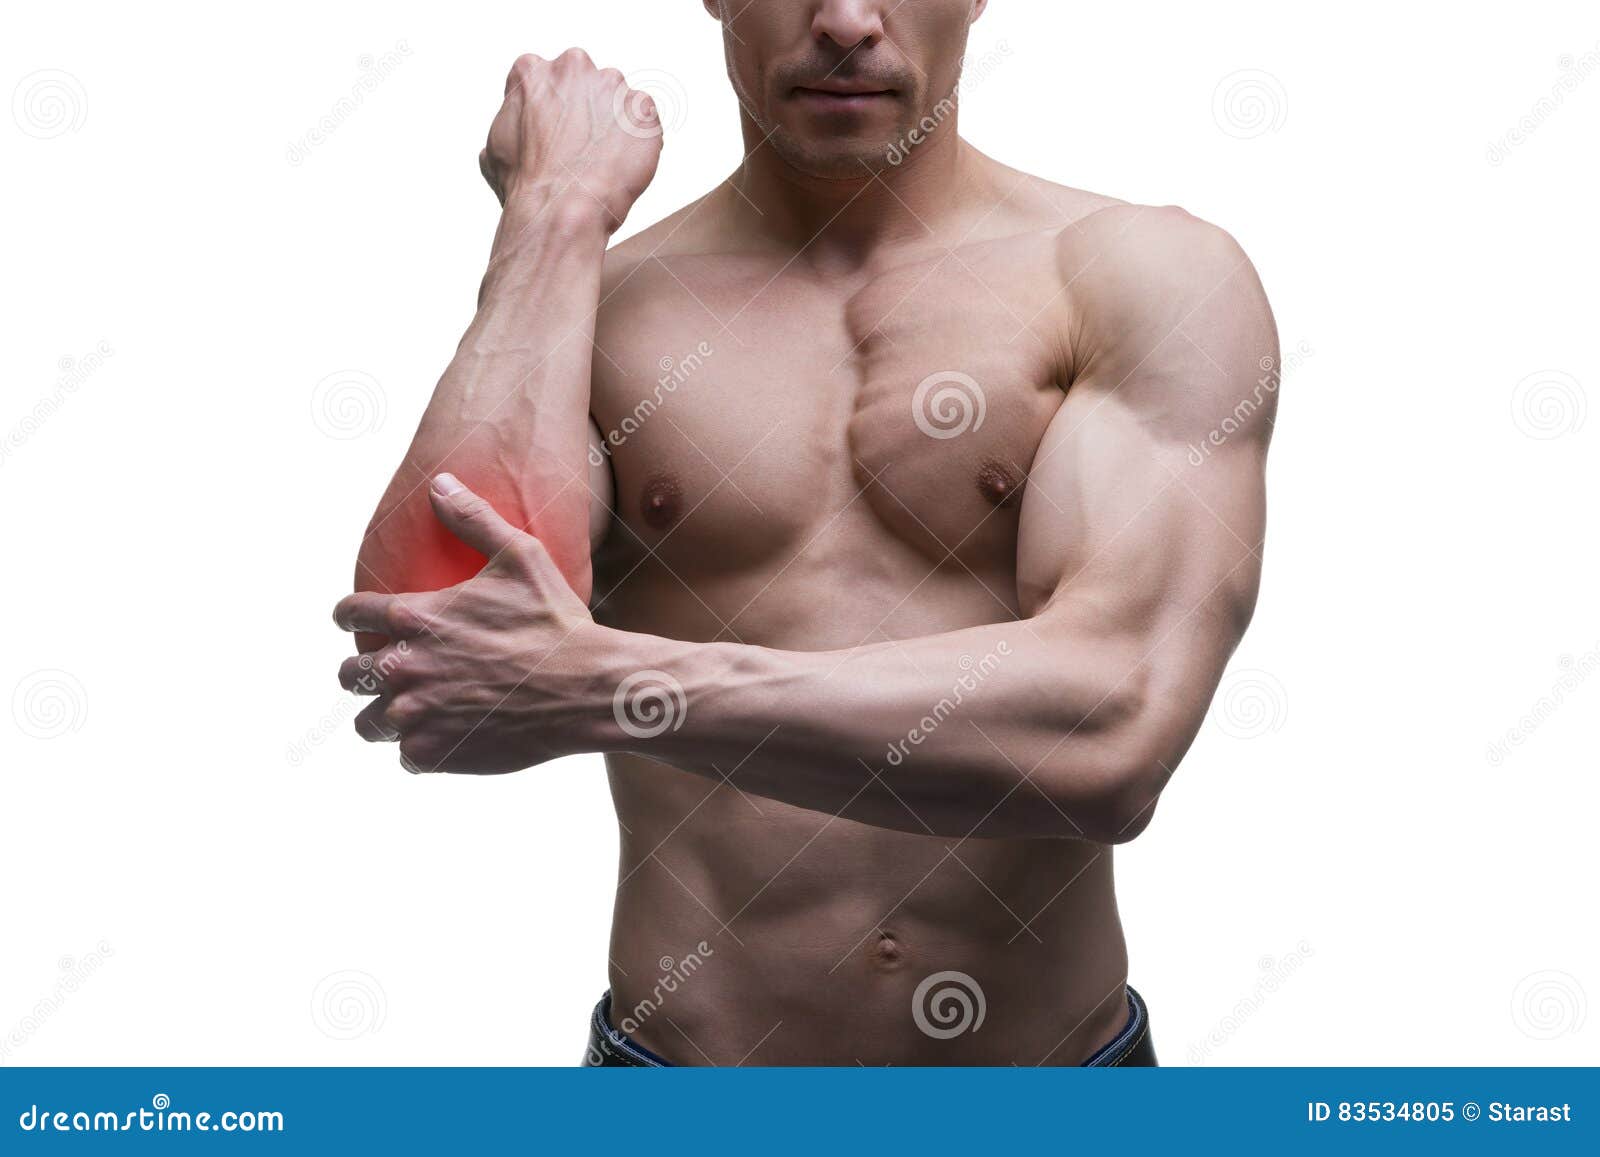 痛苦在手肘 肌肉男性身体 隔绝在白色背景库存图片 图片包括有